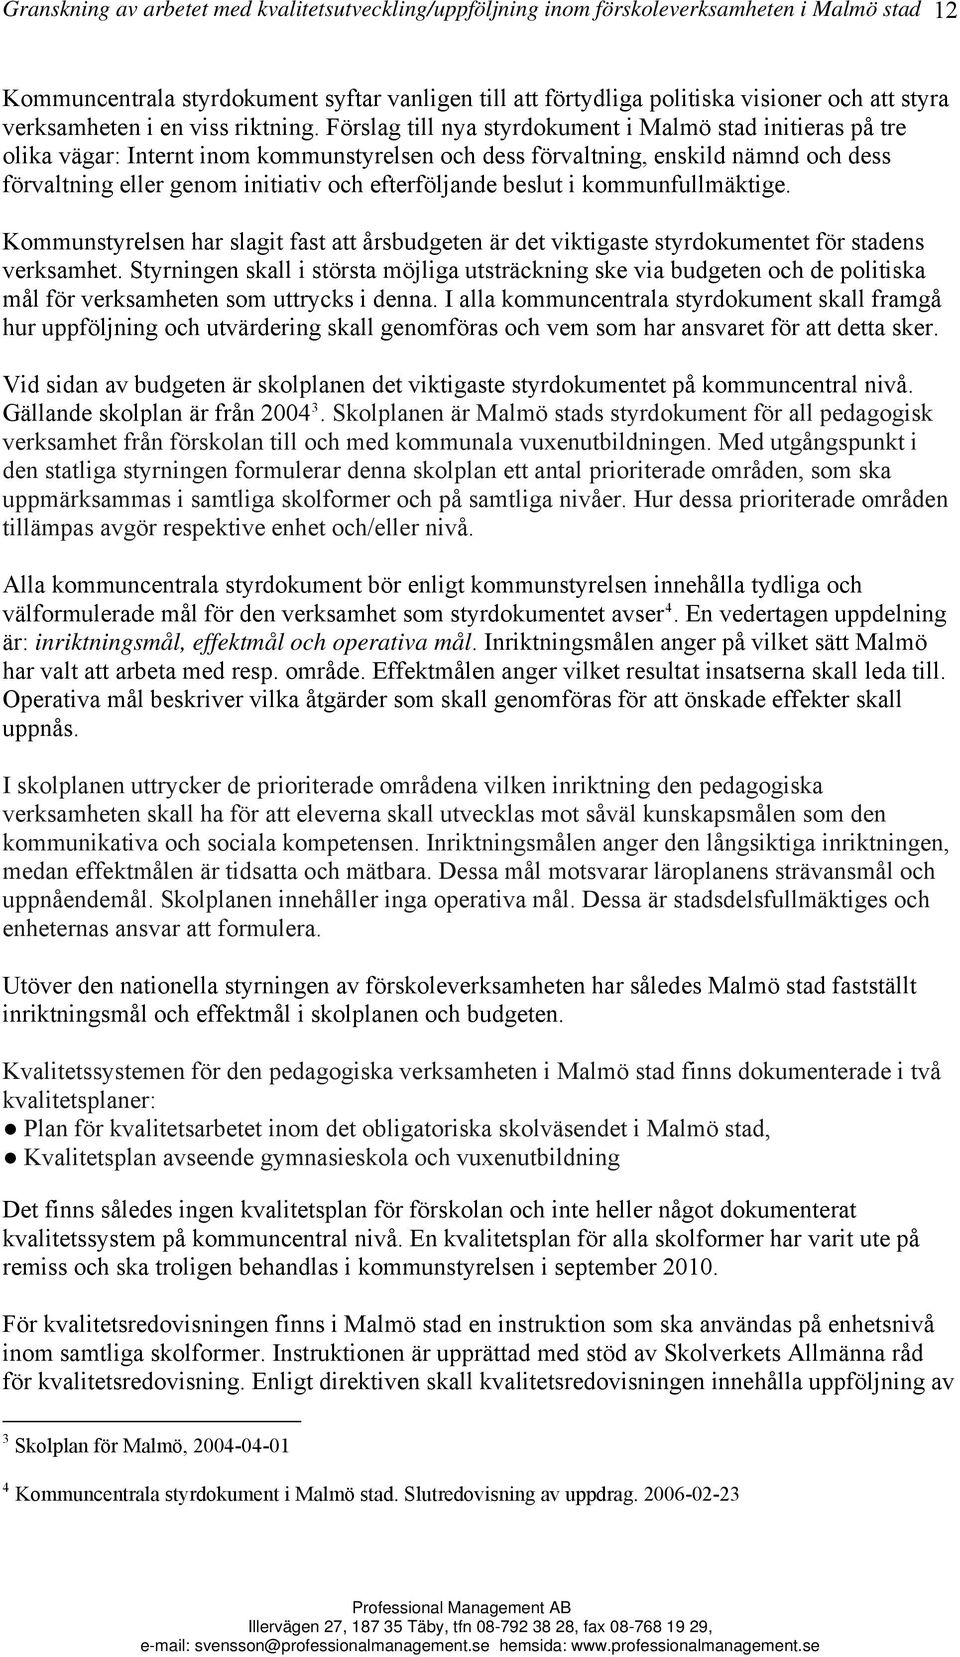 Förslag till nya styrdokument i Malmö stad initieras på tre olika vägar: Internt inom kommunstyrelsen och dess förvaltning, enskild nämnd och dess förvaltning eller genom initiativ och efterföljande